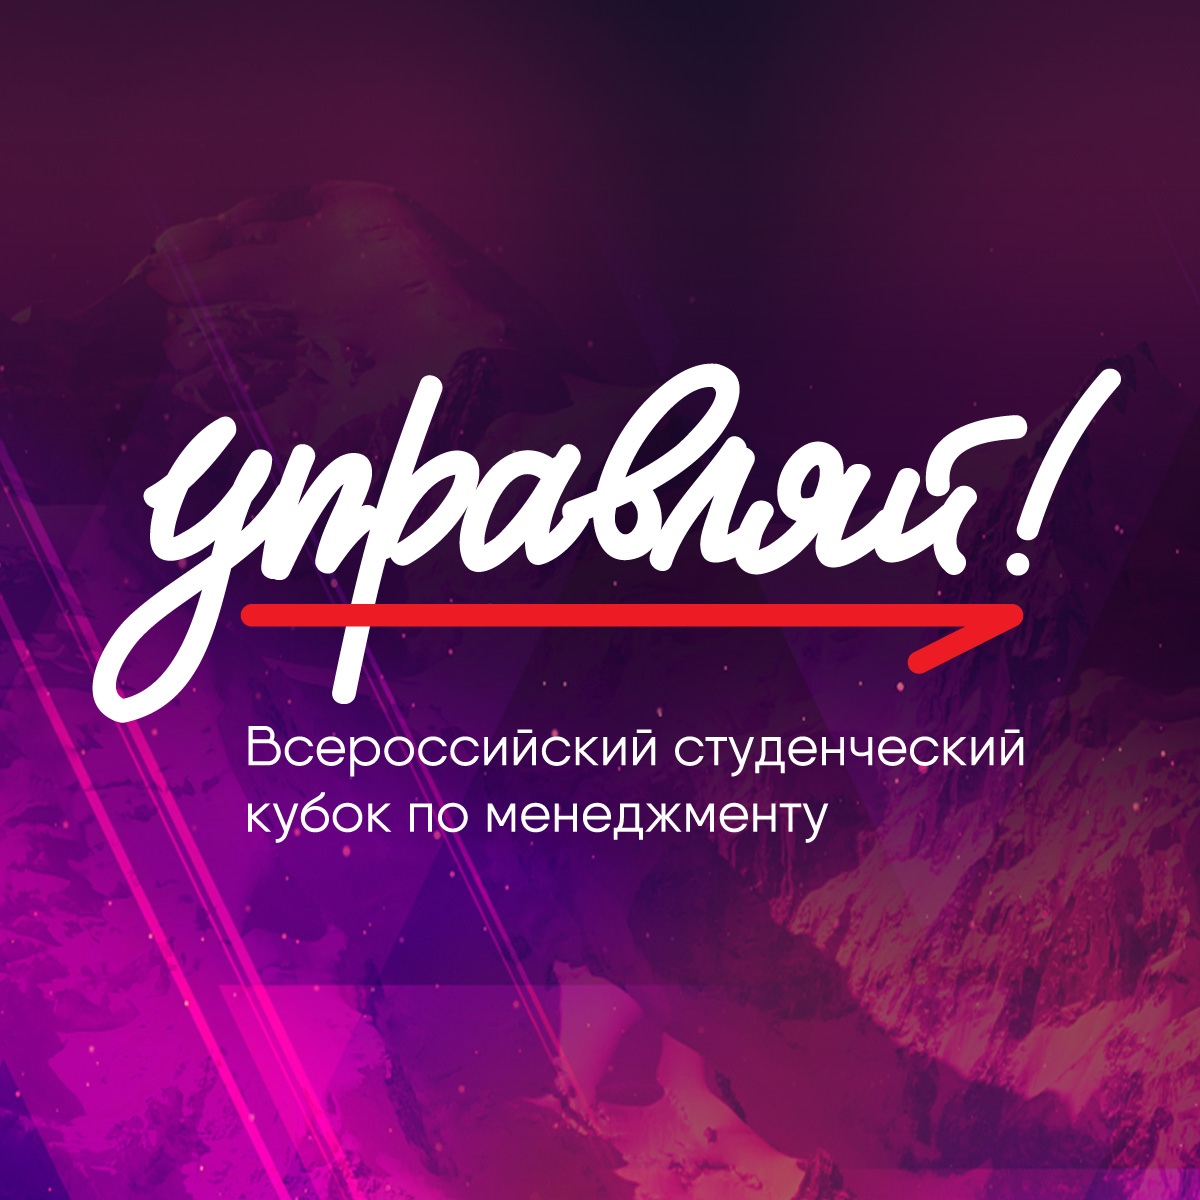 Студент из Ярославской области стал финалистом всероссийского молодежного кубка «Управляй!»